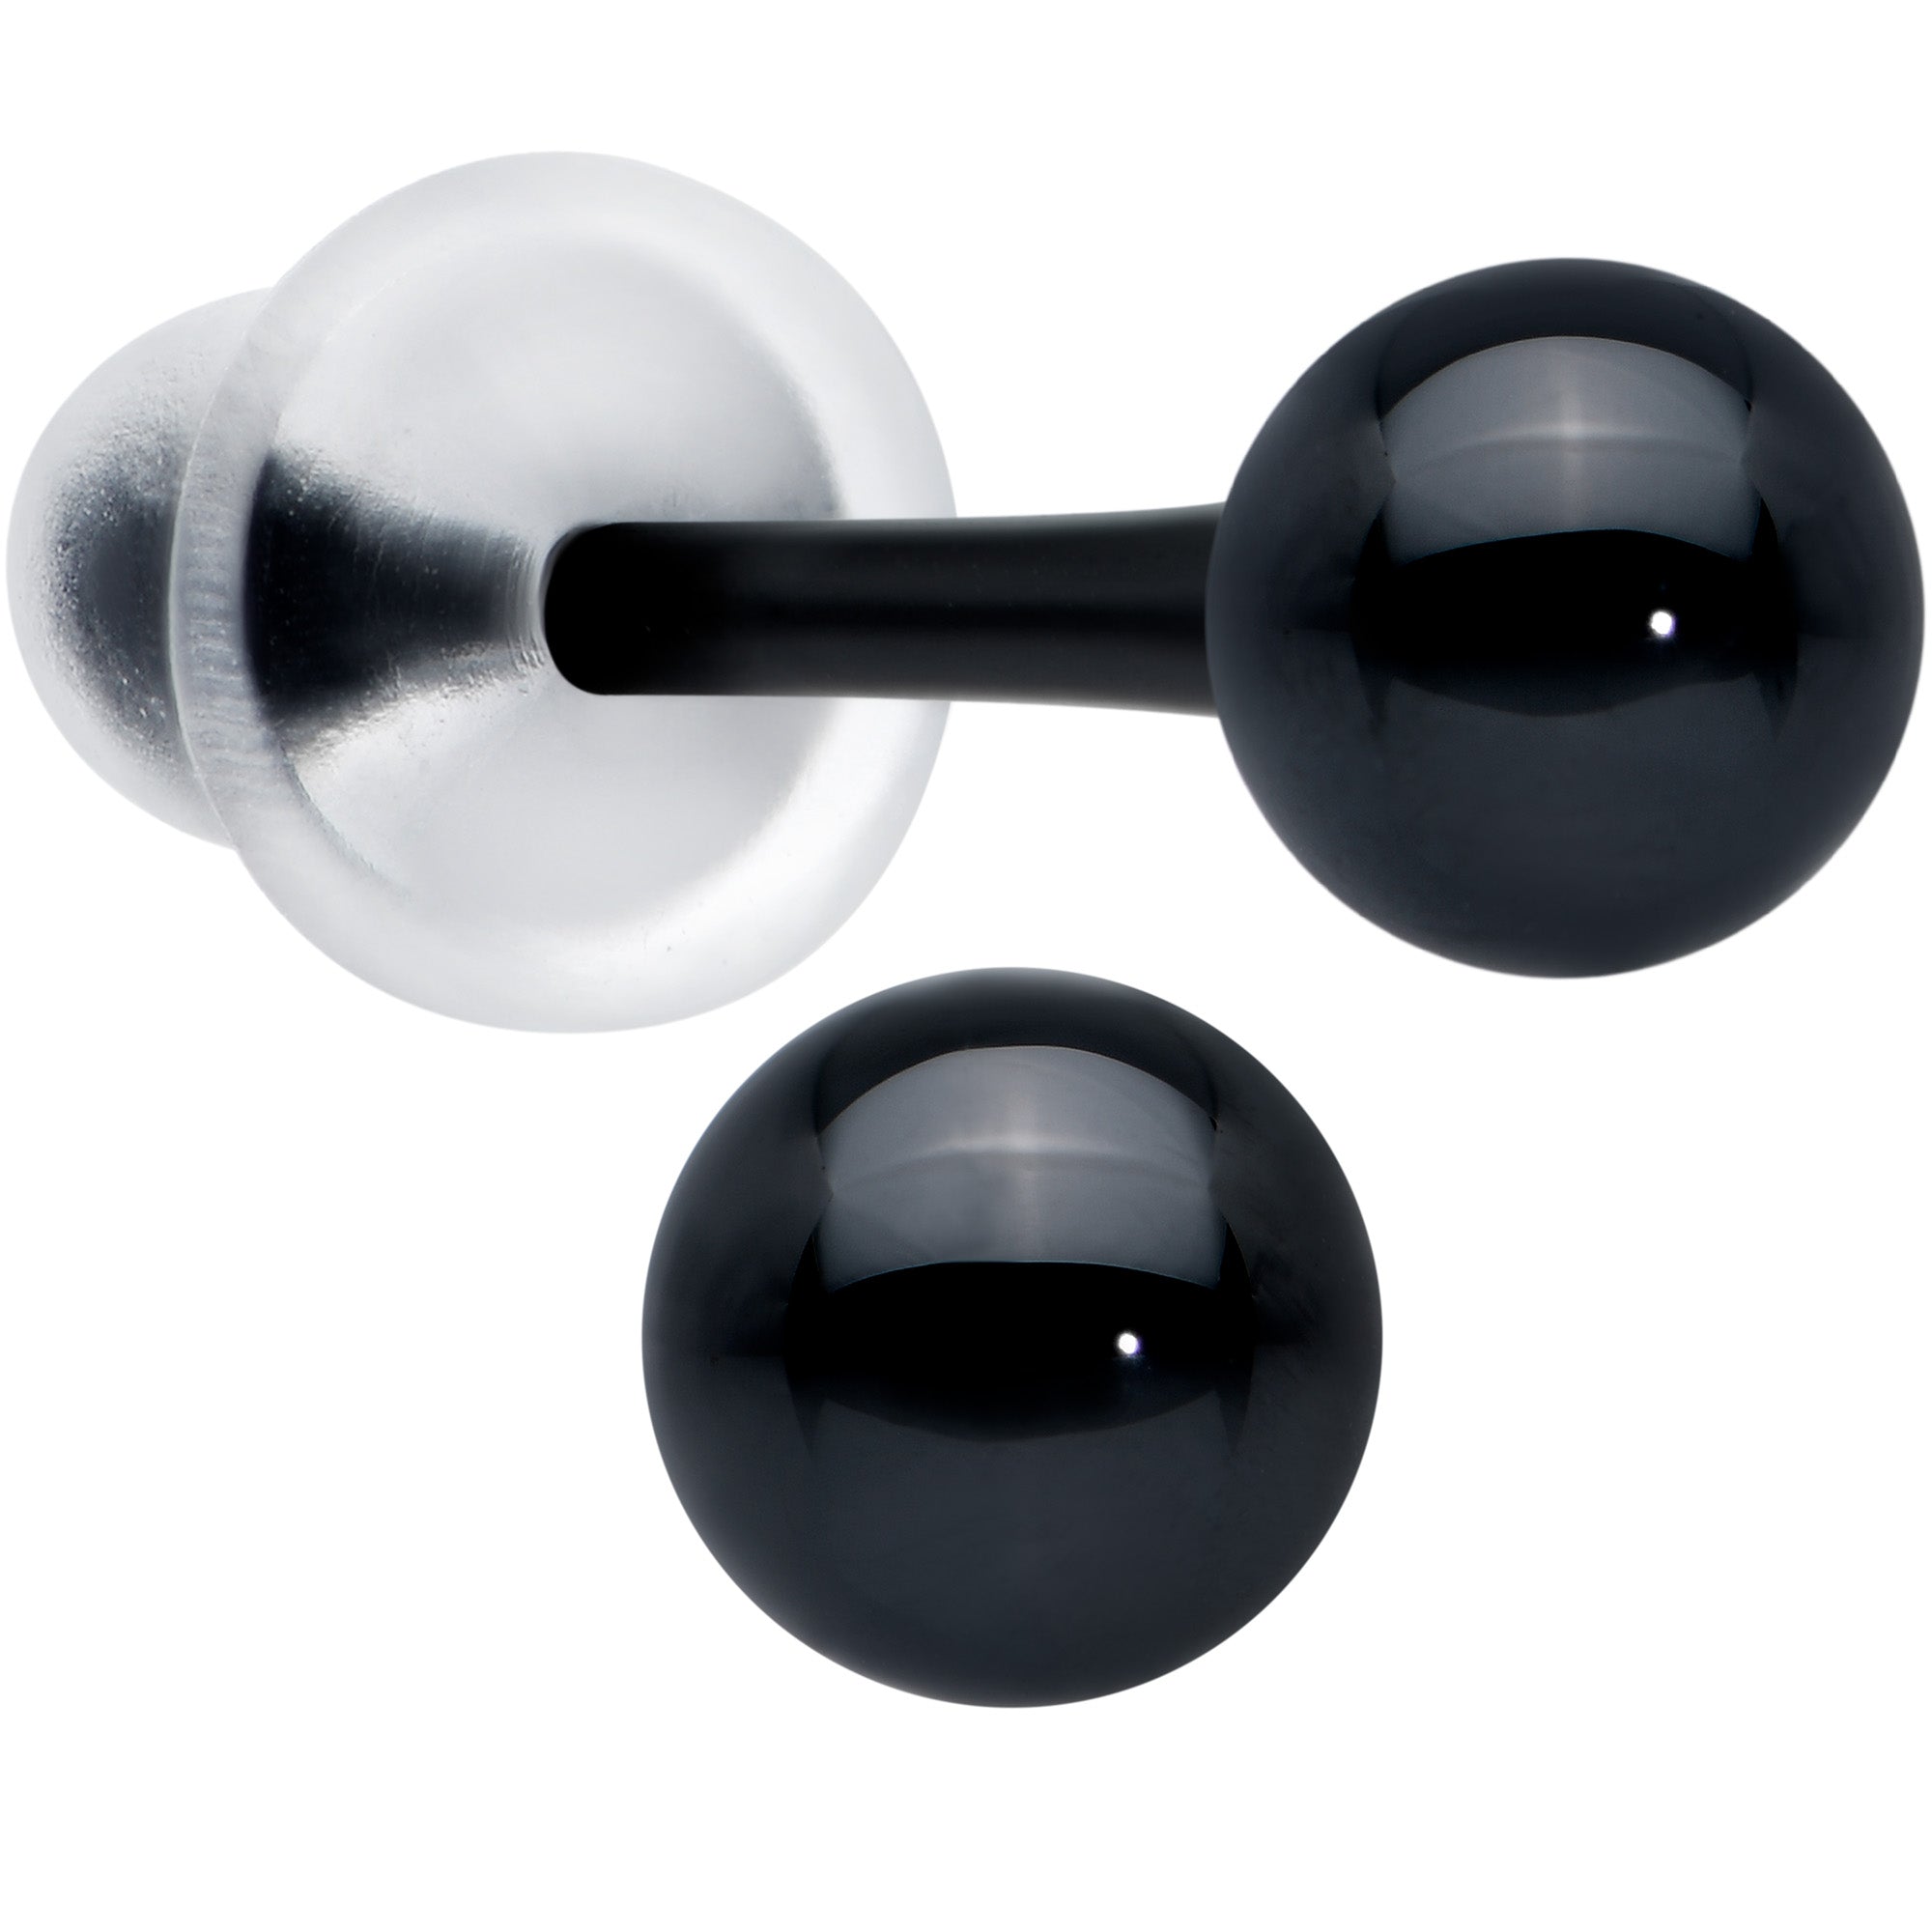 4mm Black Ceramic Ball Stud Earrings 18 Gauge